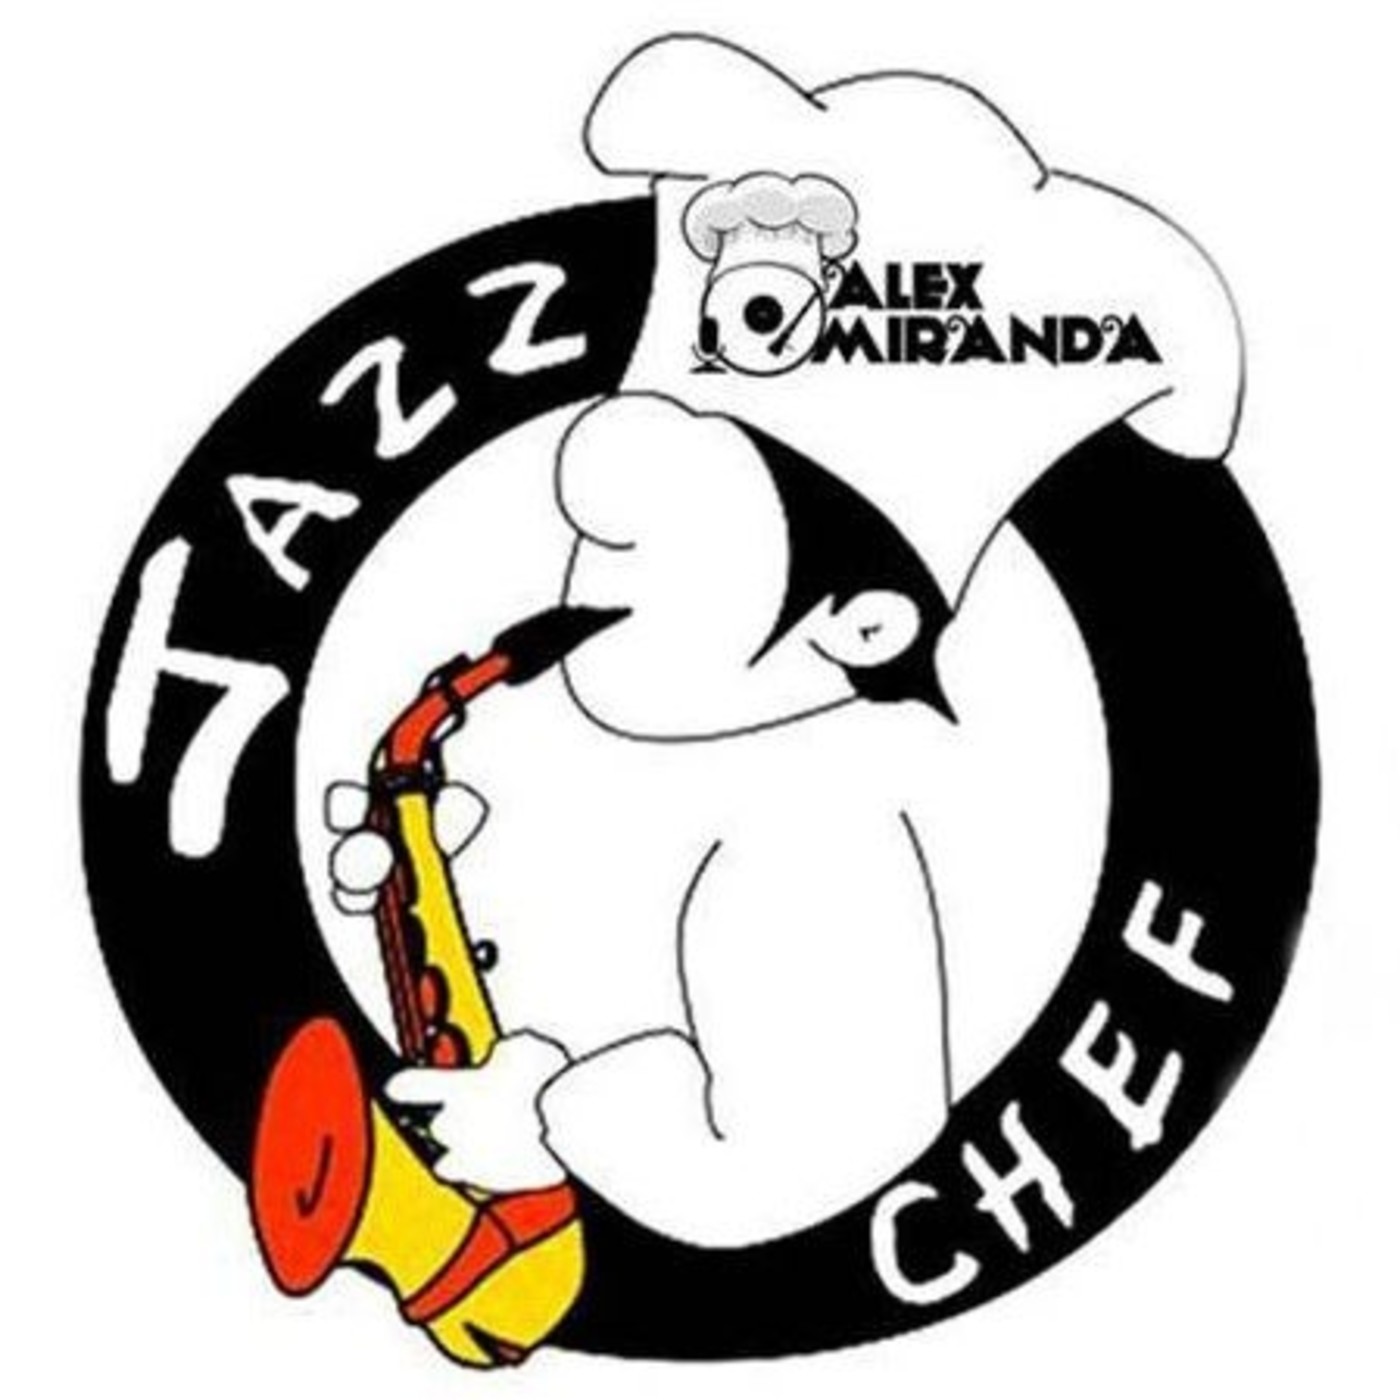 2017/03/19 - A la sazón del Jazz